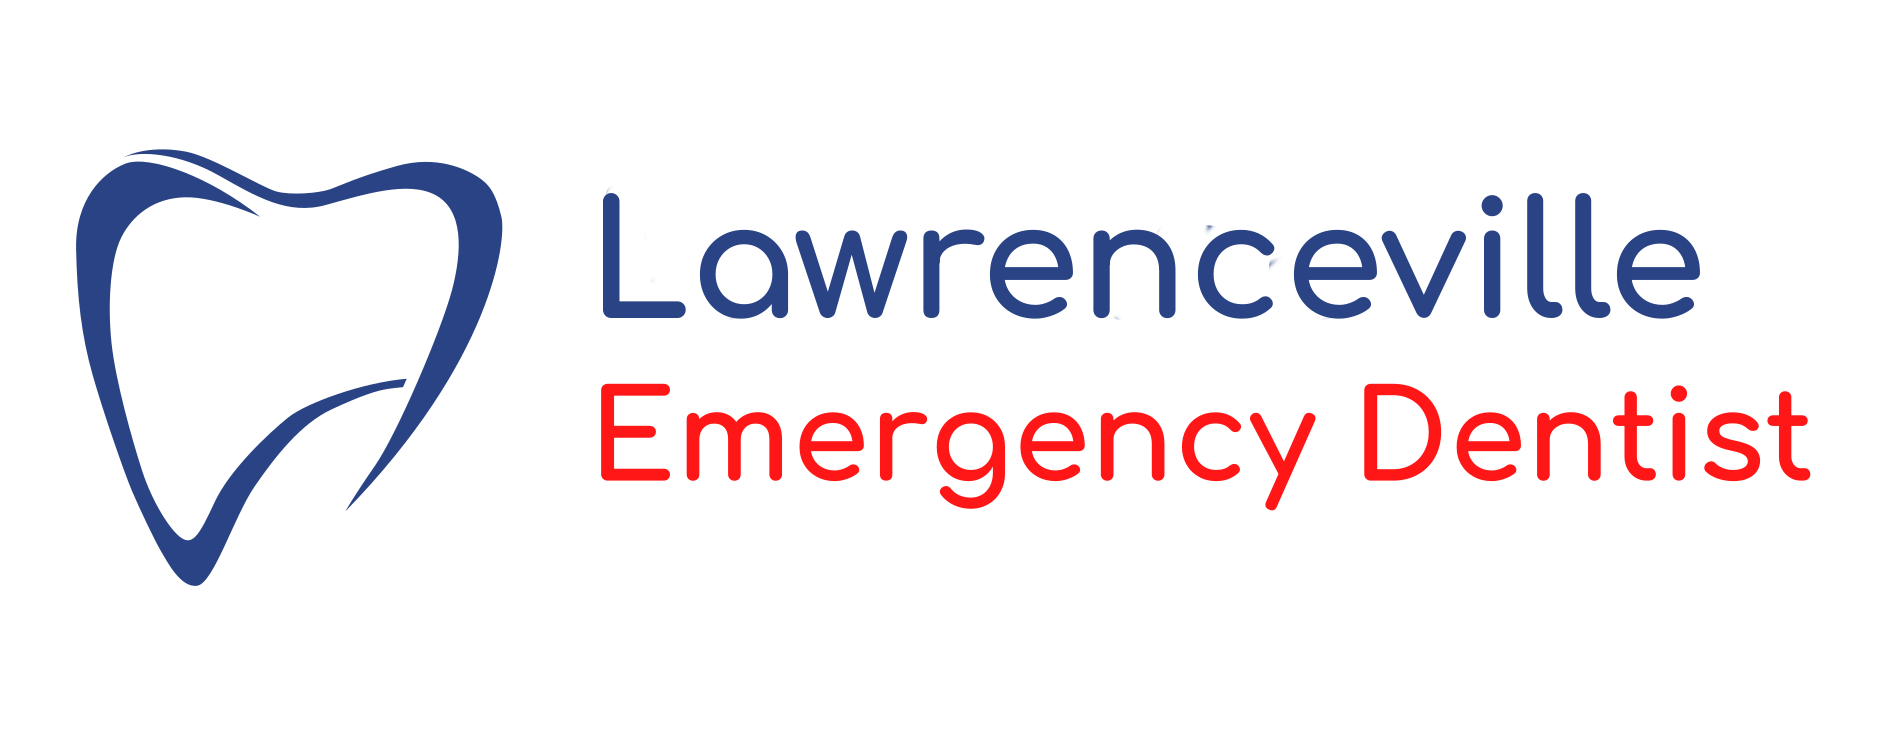 Lawrenceville Emergency Dentist